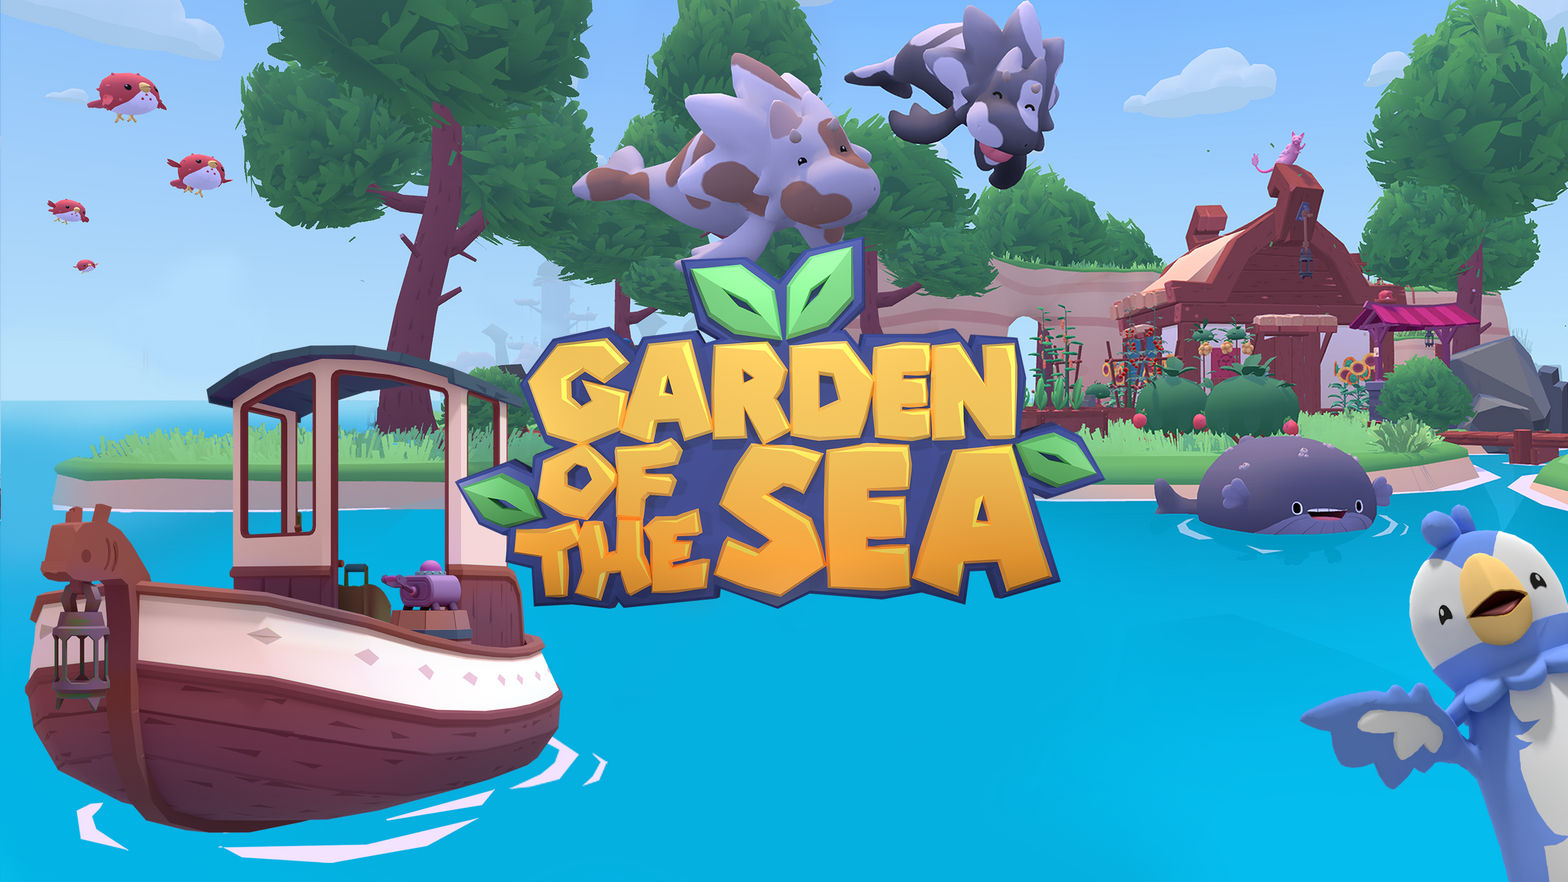 Garden of the Sea